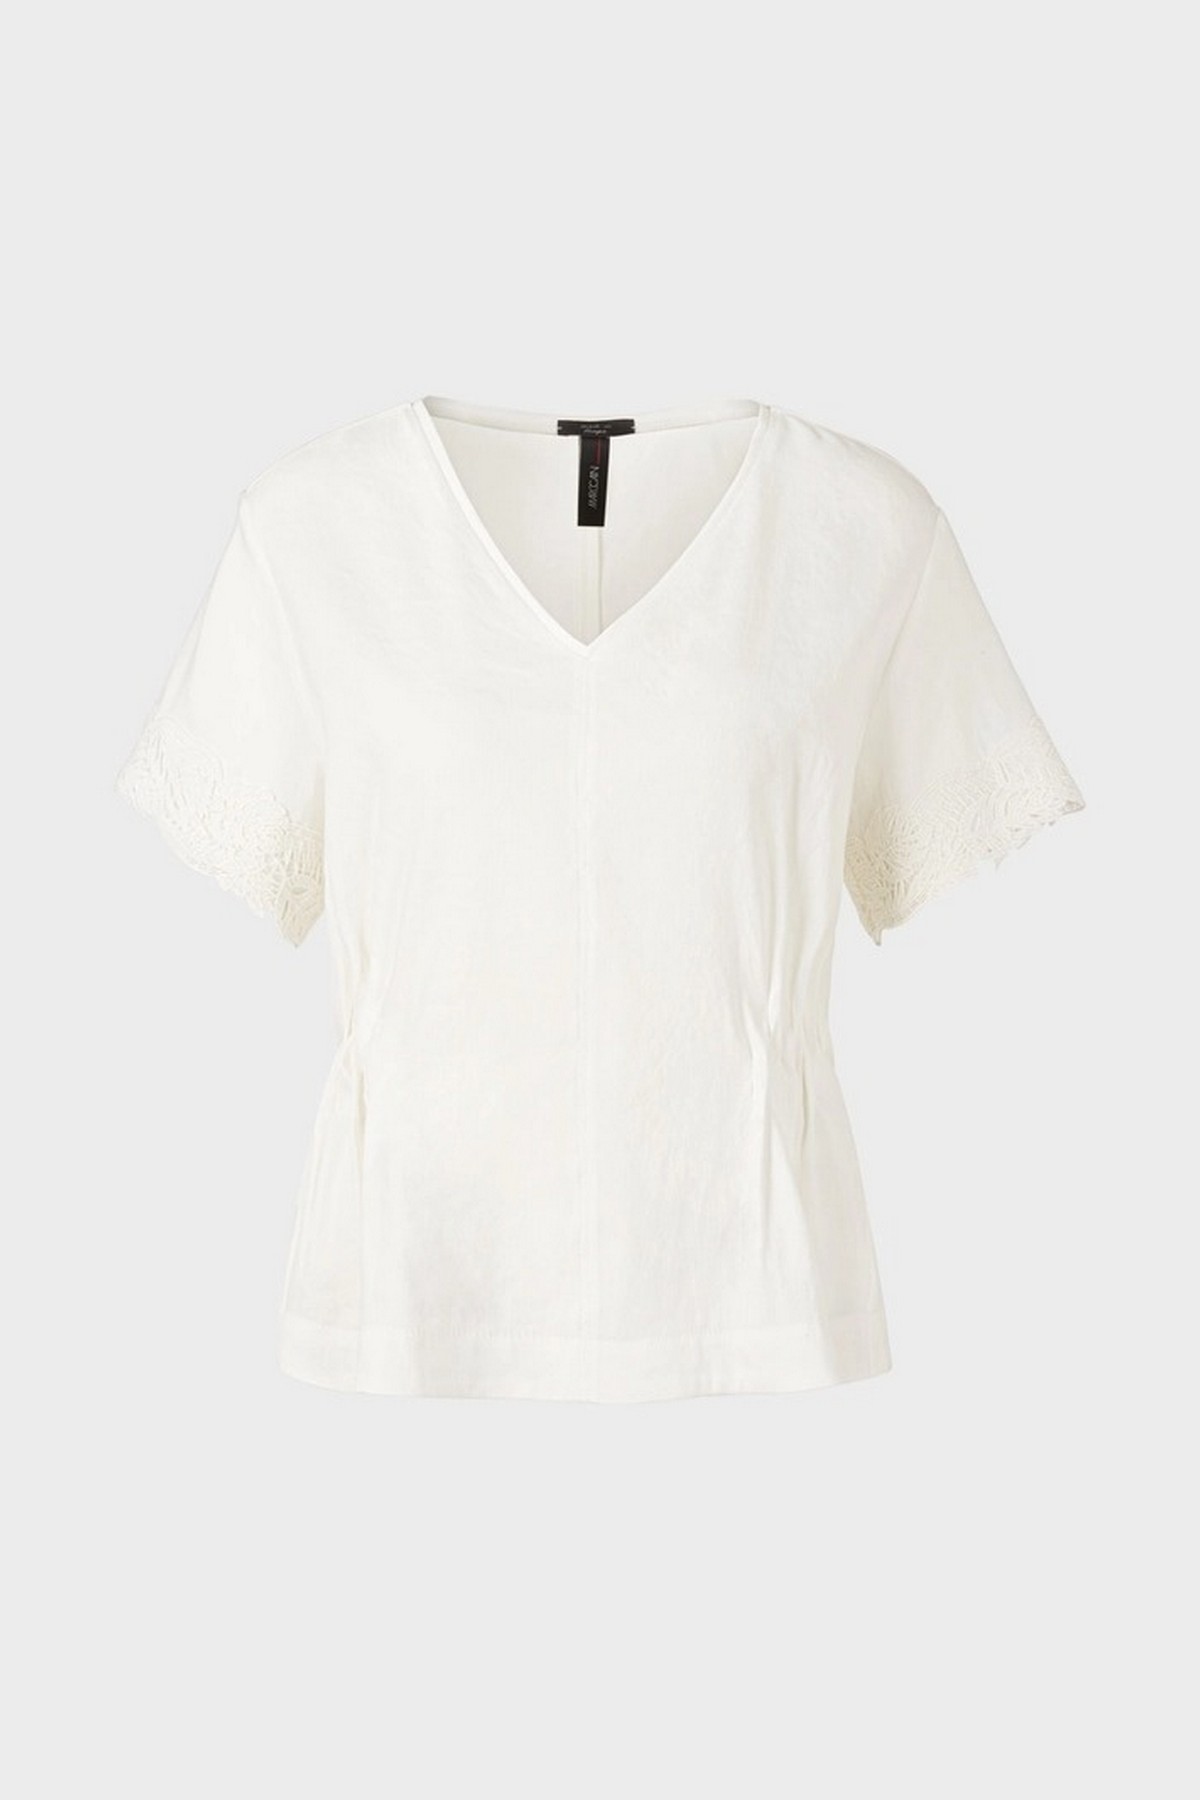 Shirtbloes kanten biezen in de kleur off white van het merk Marc Cain Collections